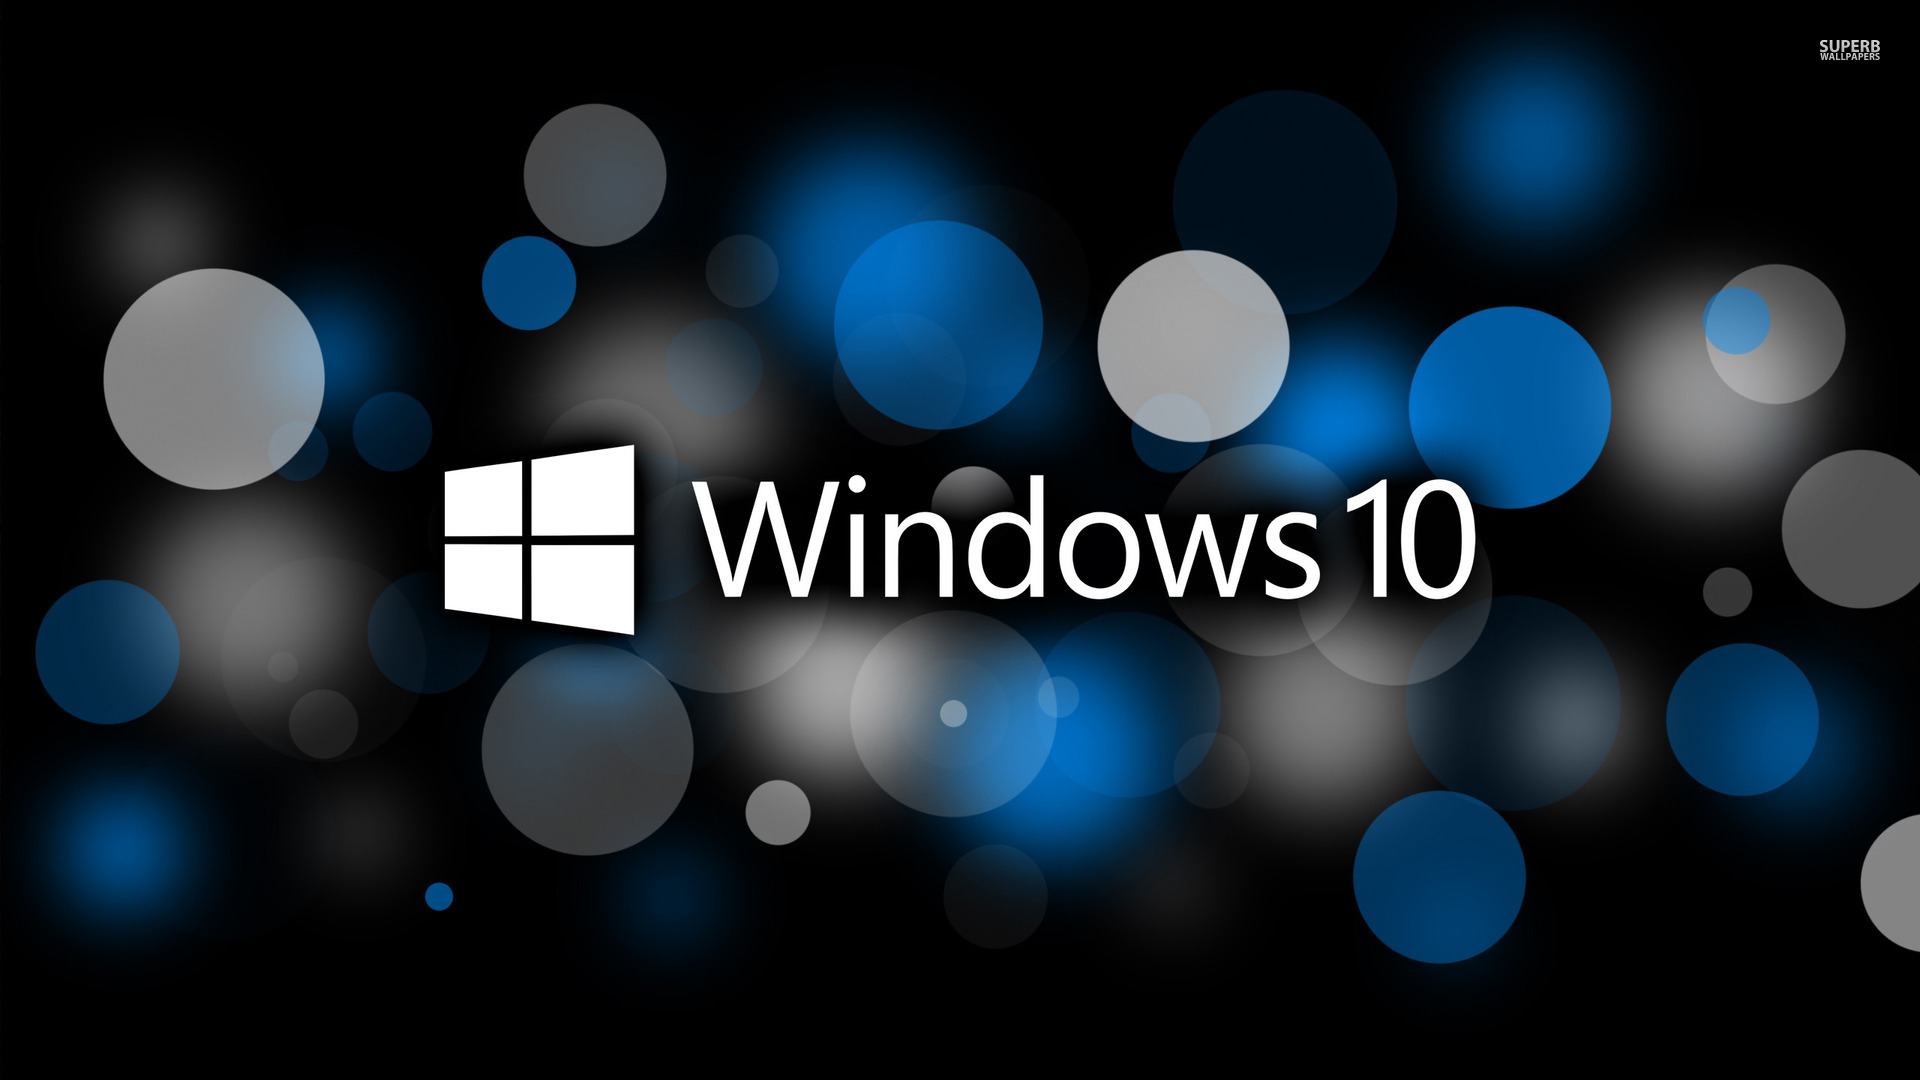 Wallpaper Windows 10 Hd Cutewallpaper Org